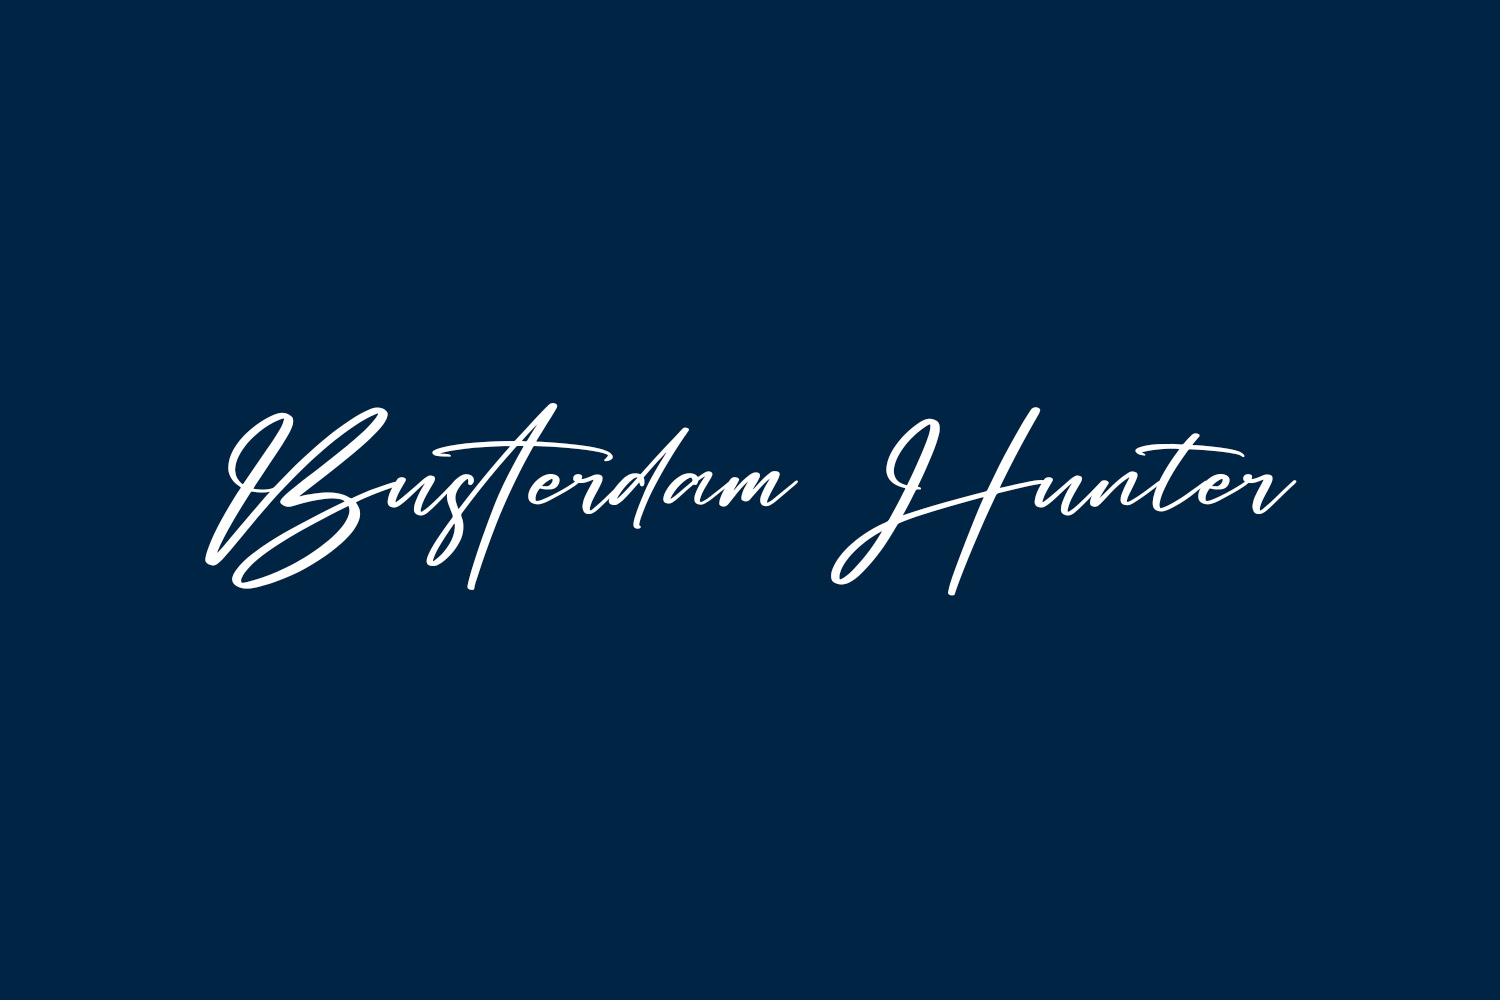 Busterdam Hunter Free Font